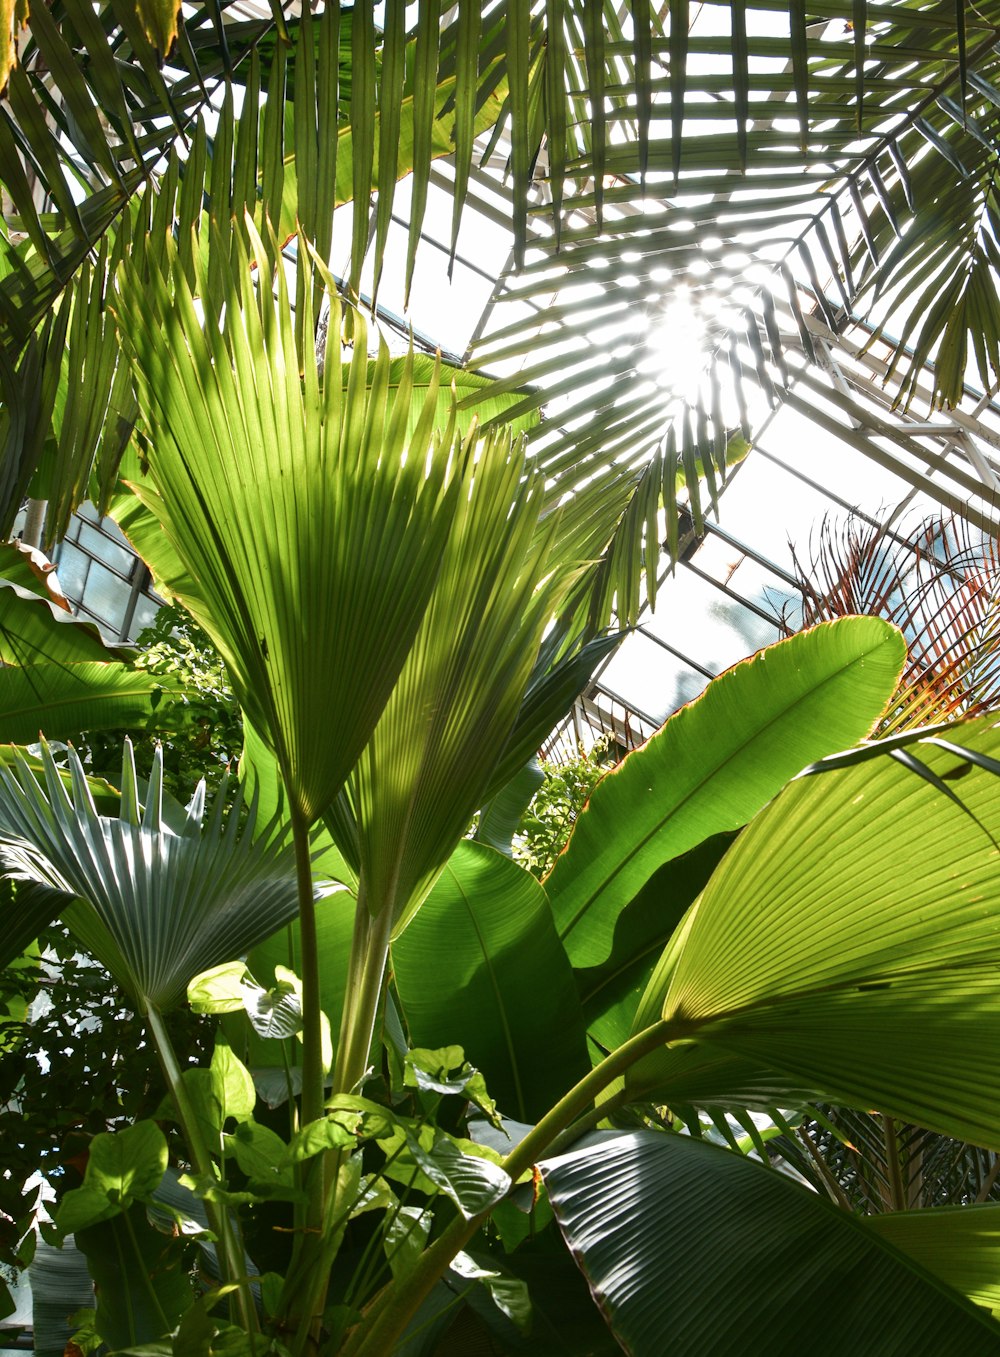 green banana tree during daytime